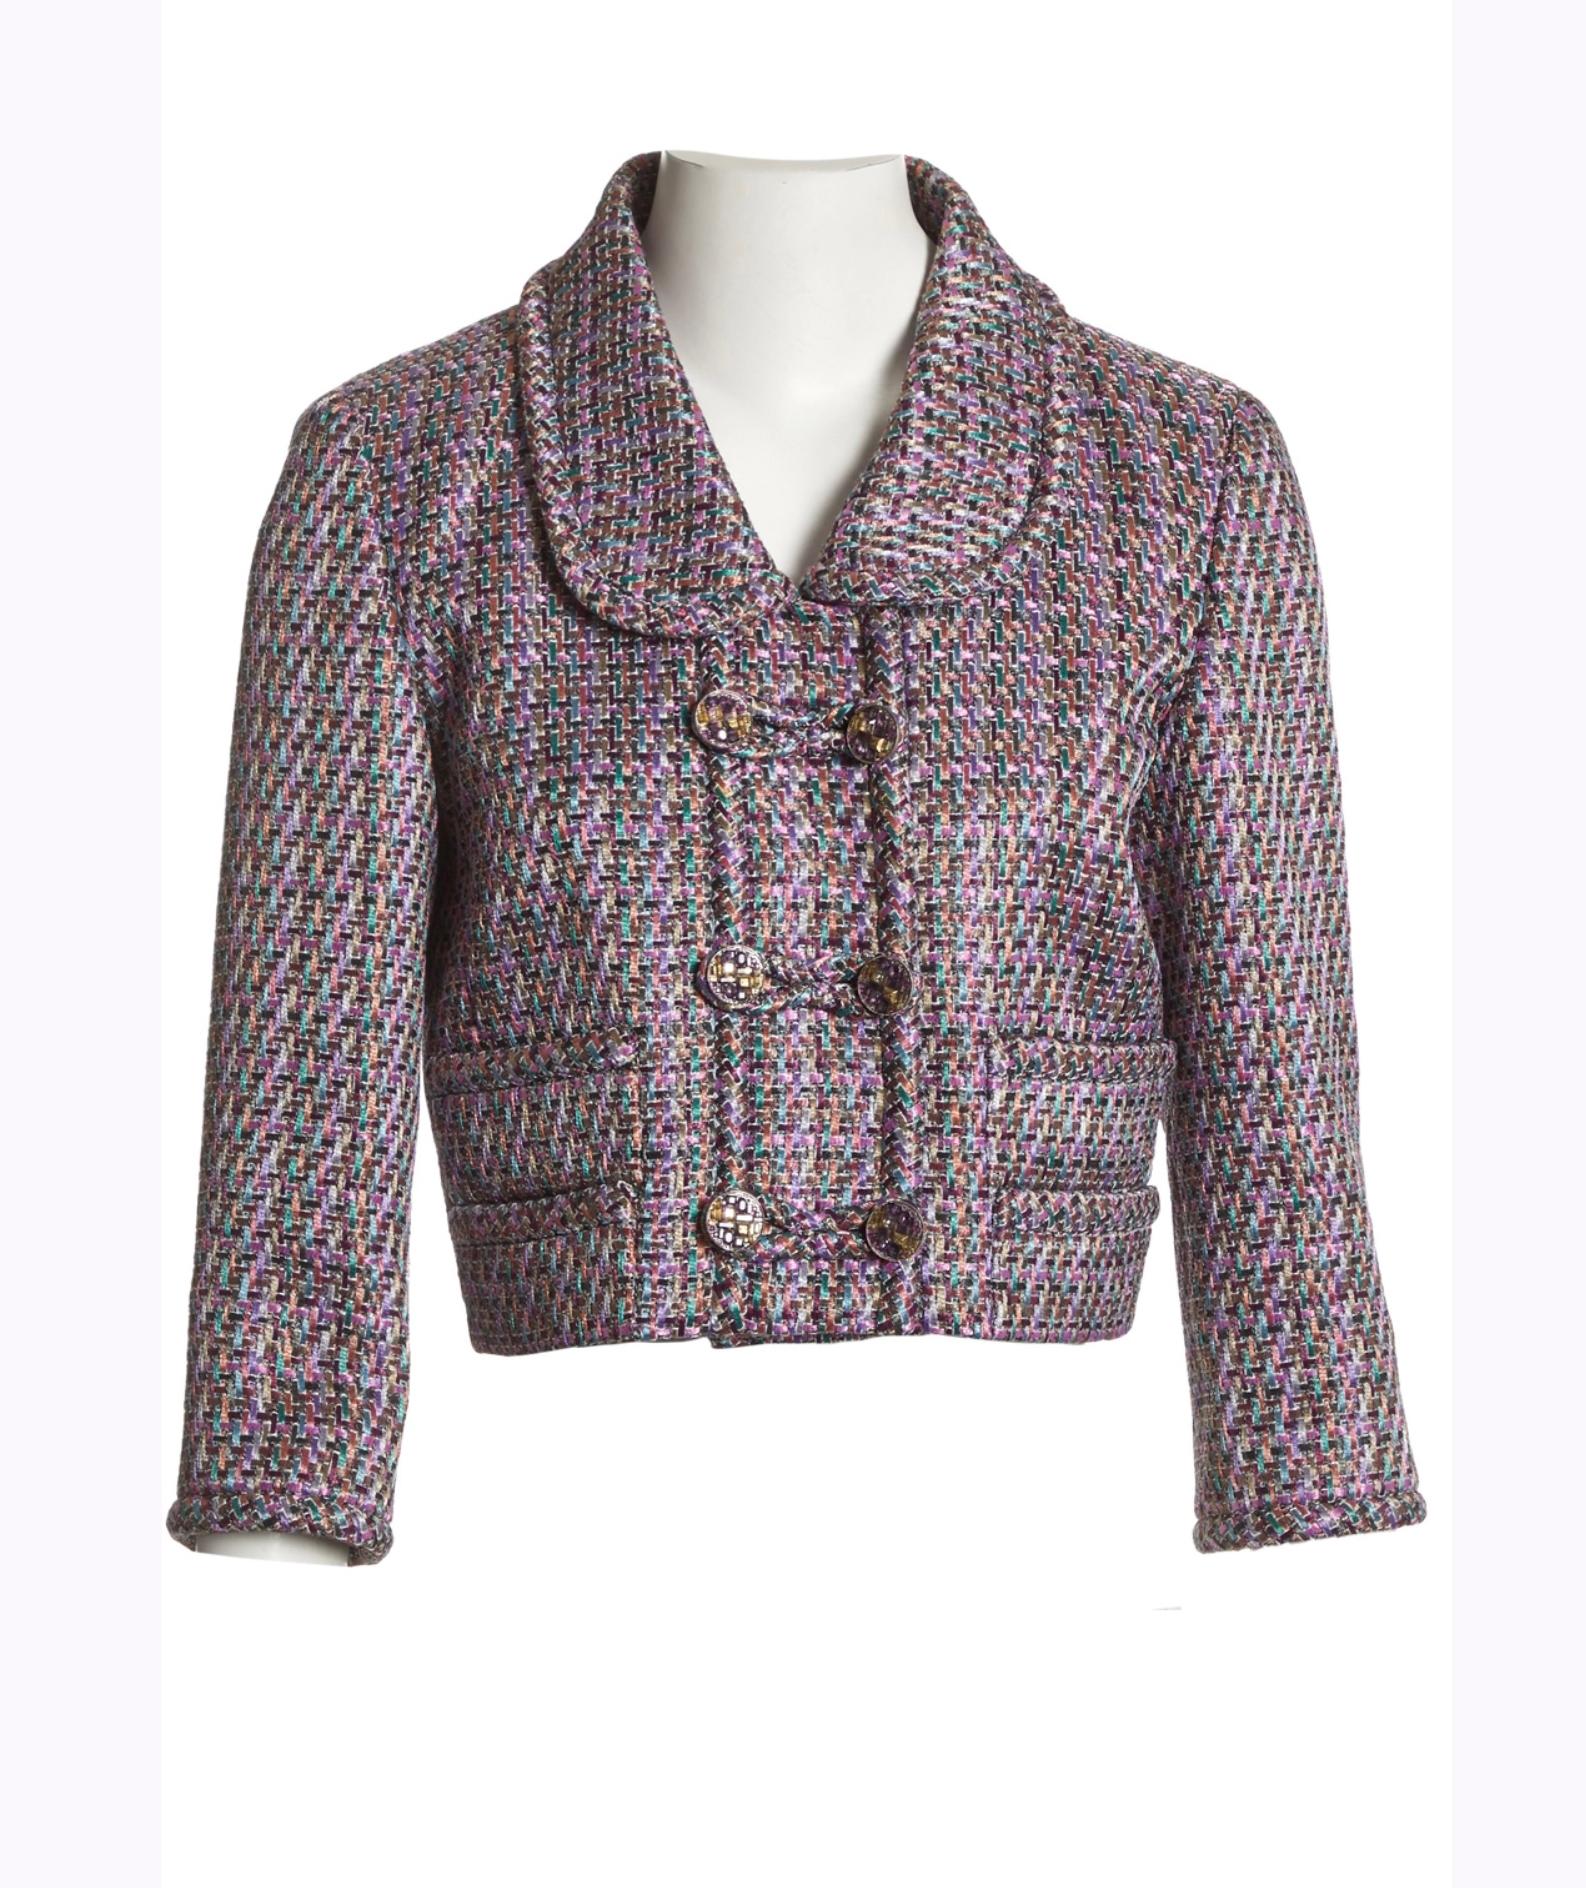 Superbe veste Chanel en tweed lavande Lesage avec boutons logo CC : de Paris / Collectional SALZBURG
Taille 38 FR. Condit est en parfait état, n'a été essayé qu'une seule fois.